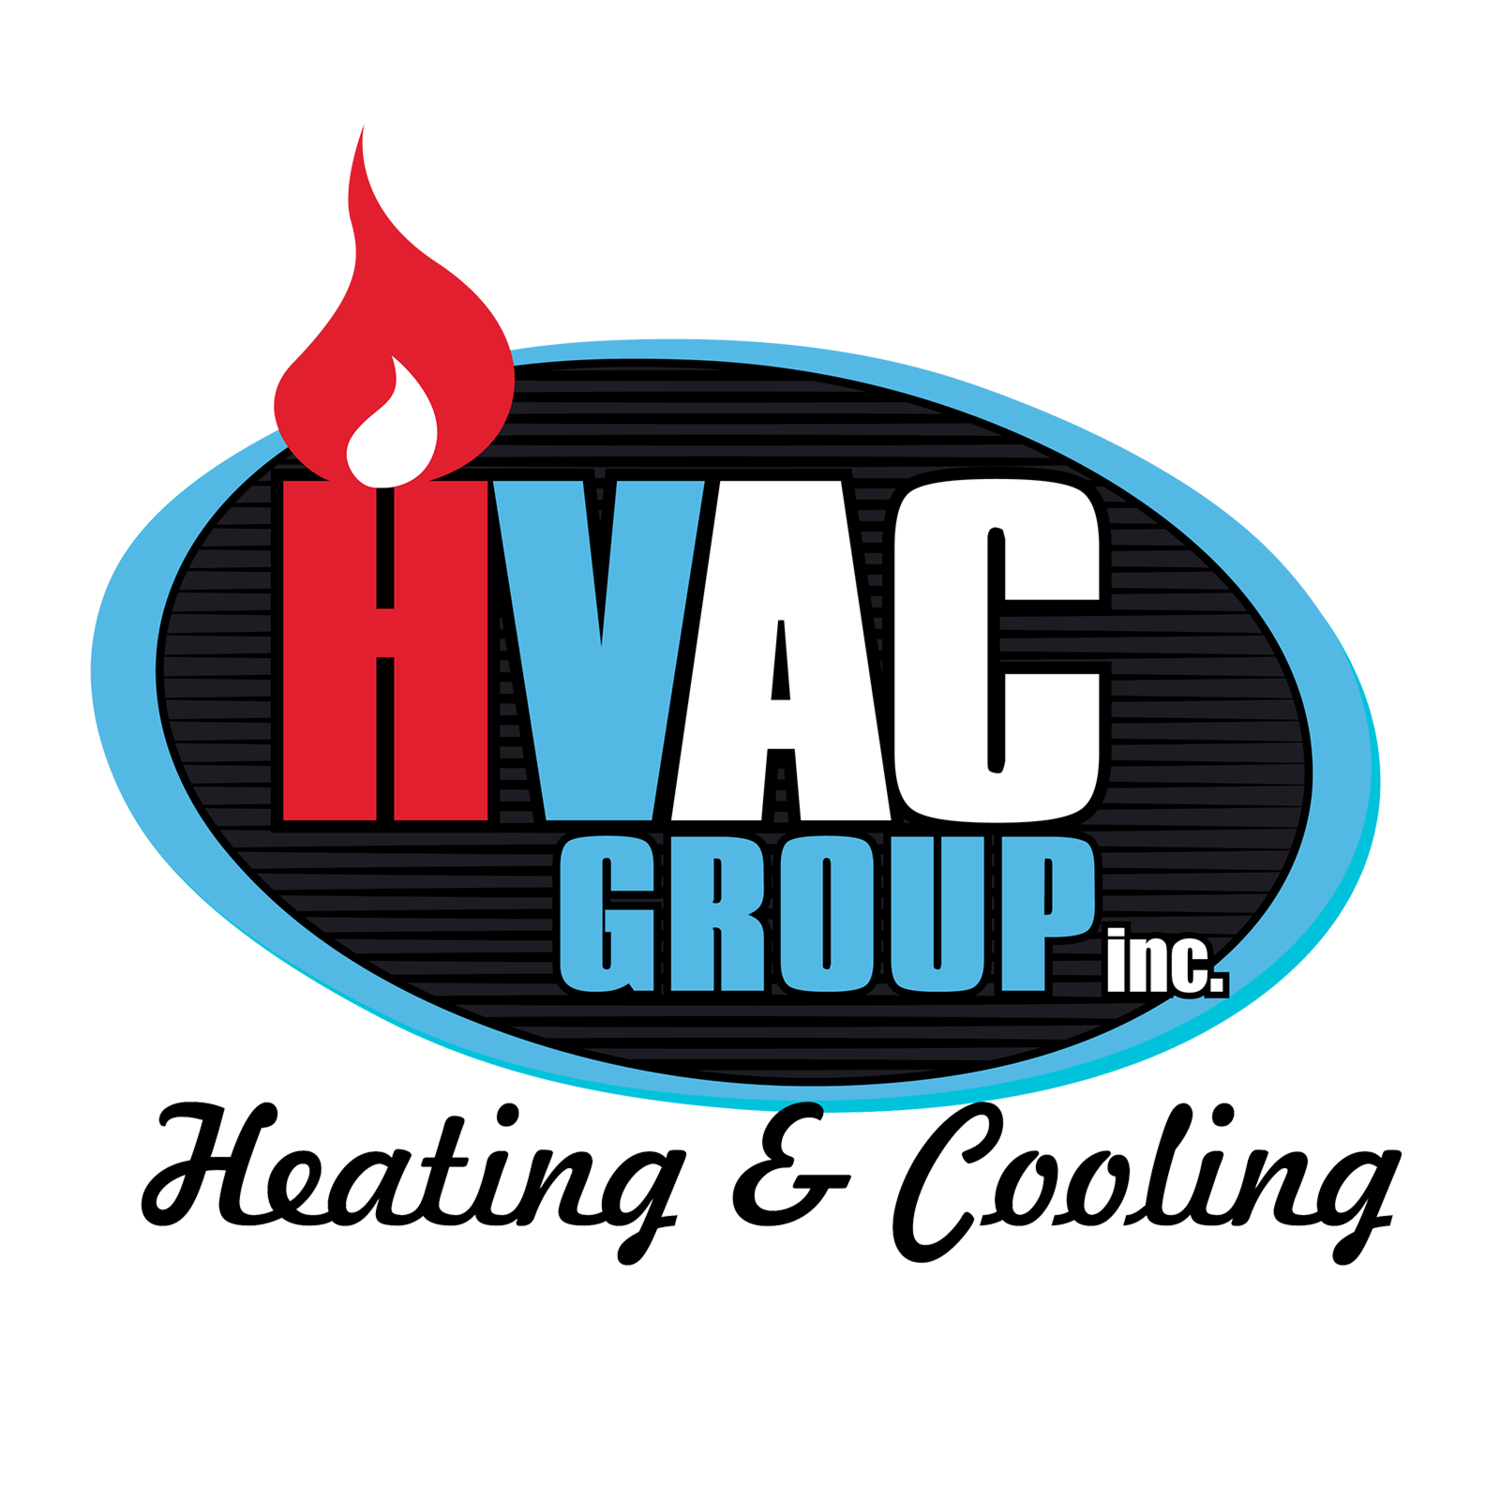 HVAC Group Inc